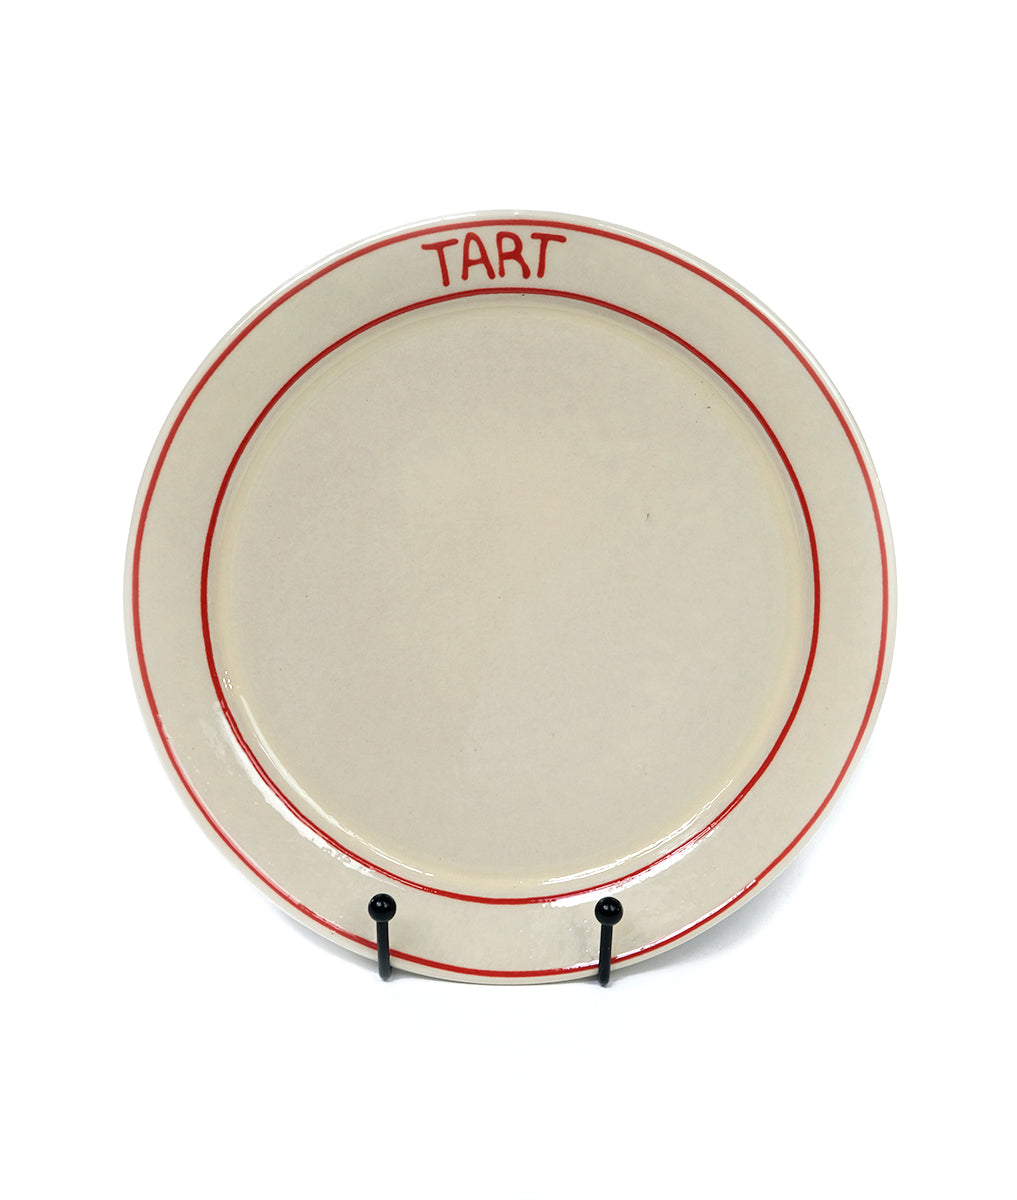 Tart London TART Plate - Red